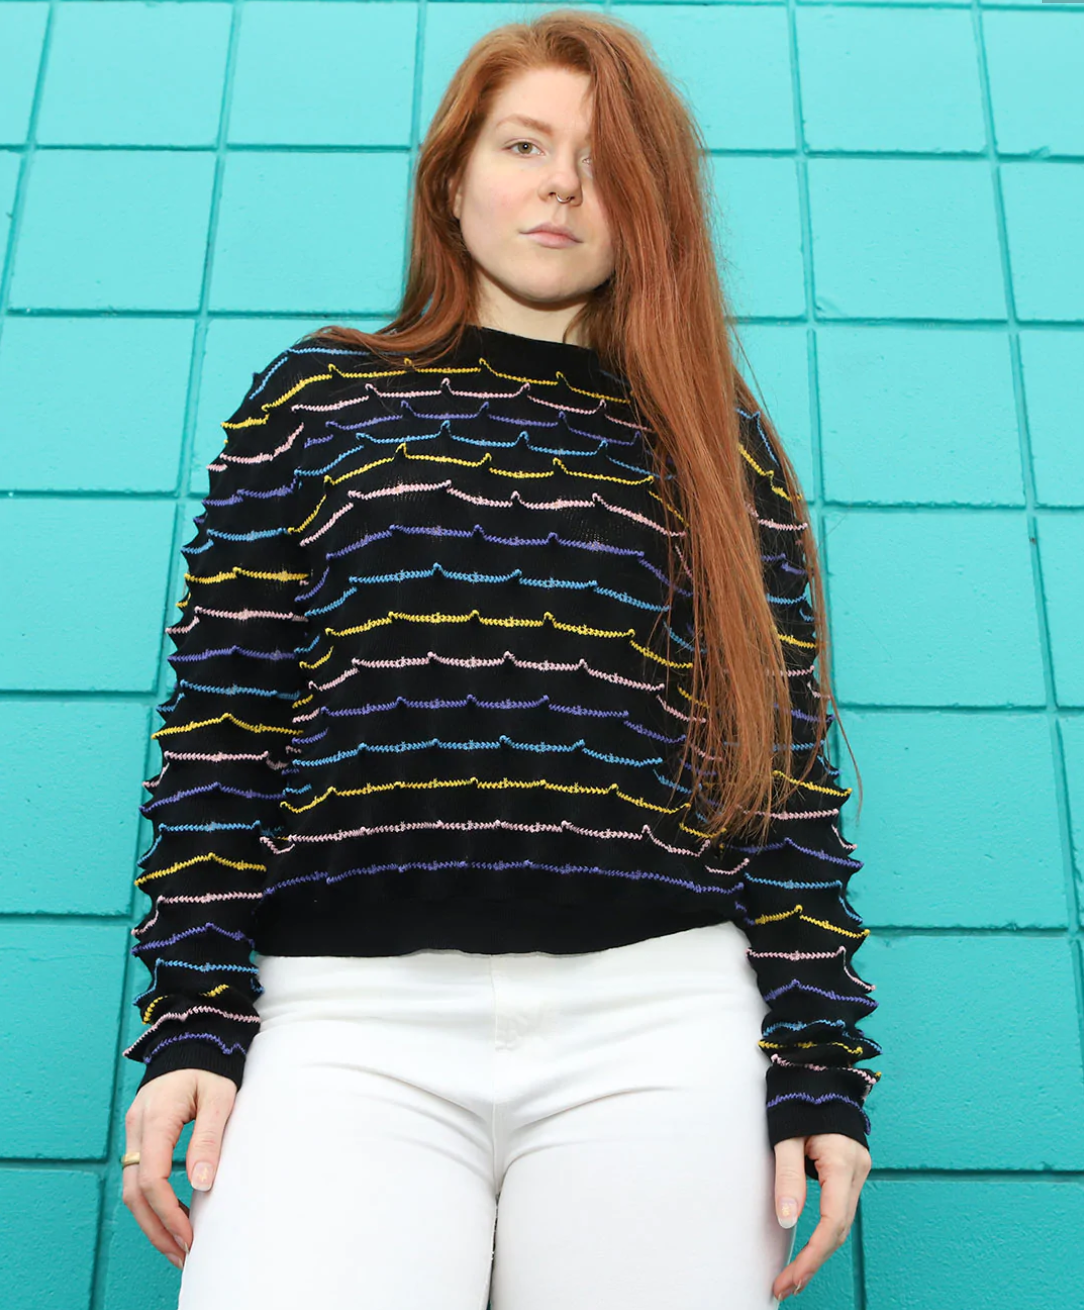 Spiky Stripy Sweater